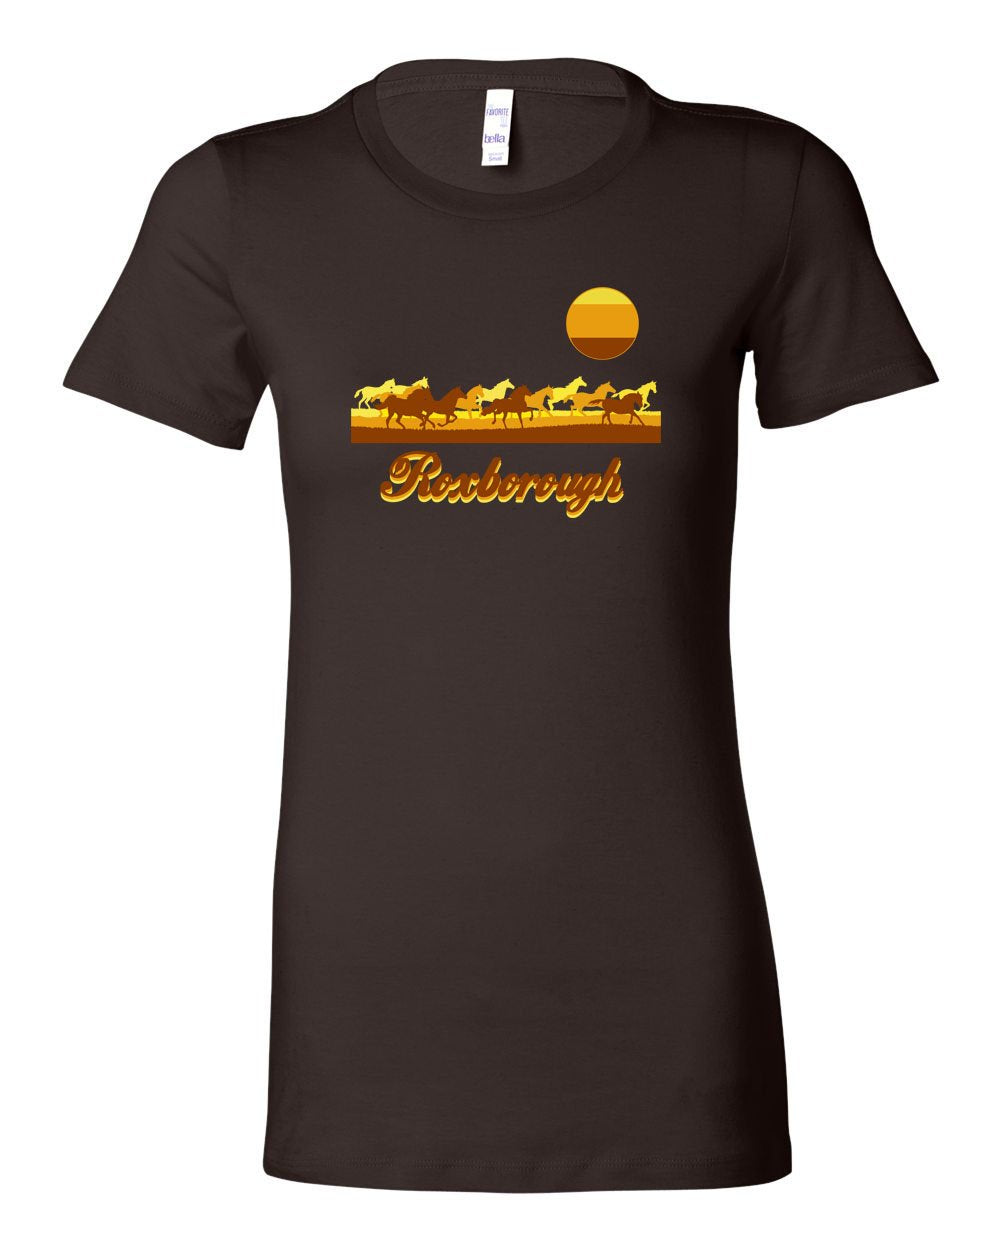 Roxborough LADIES Junior-Fit T-Shirt